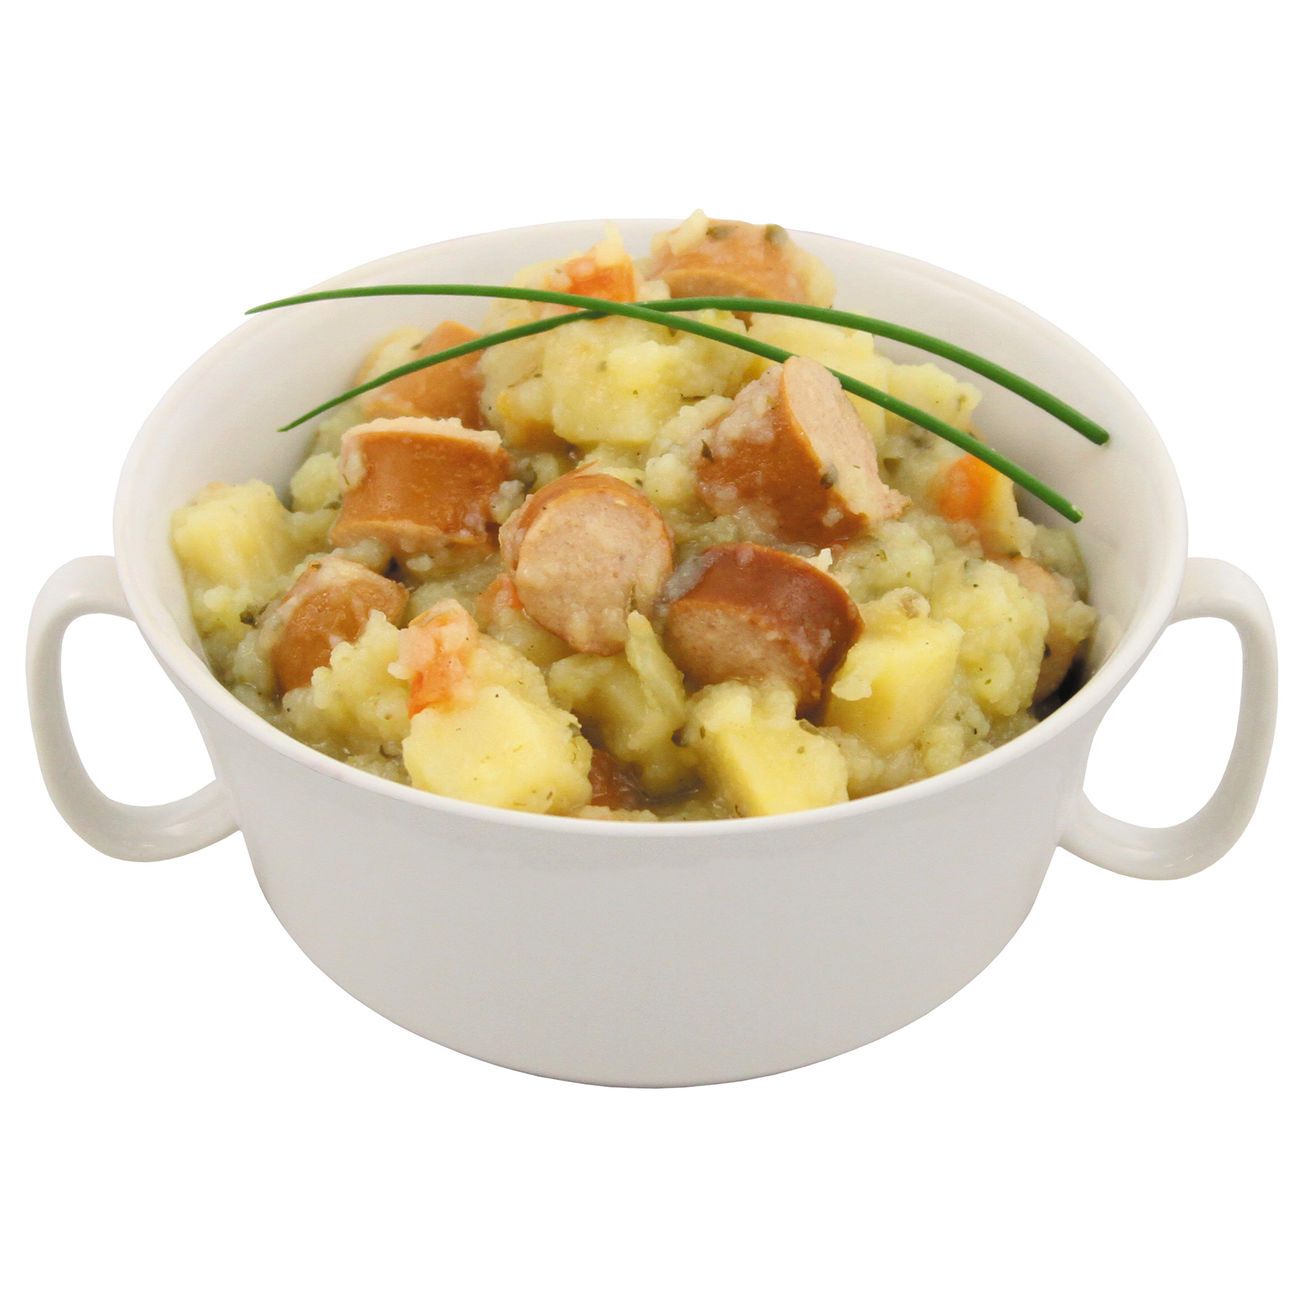 Outdoor-Mahlzeit Kartoffelsuppe mit Wiener Würstchen Dose Bild 2